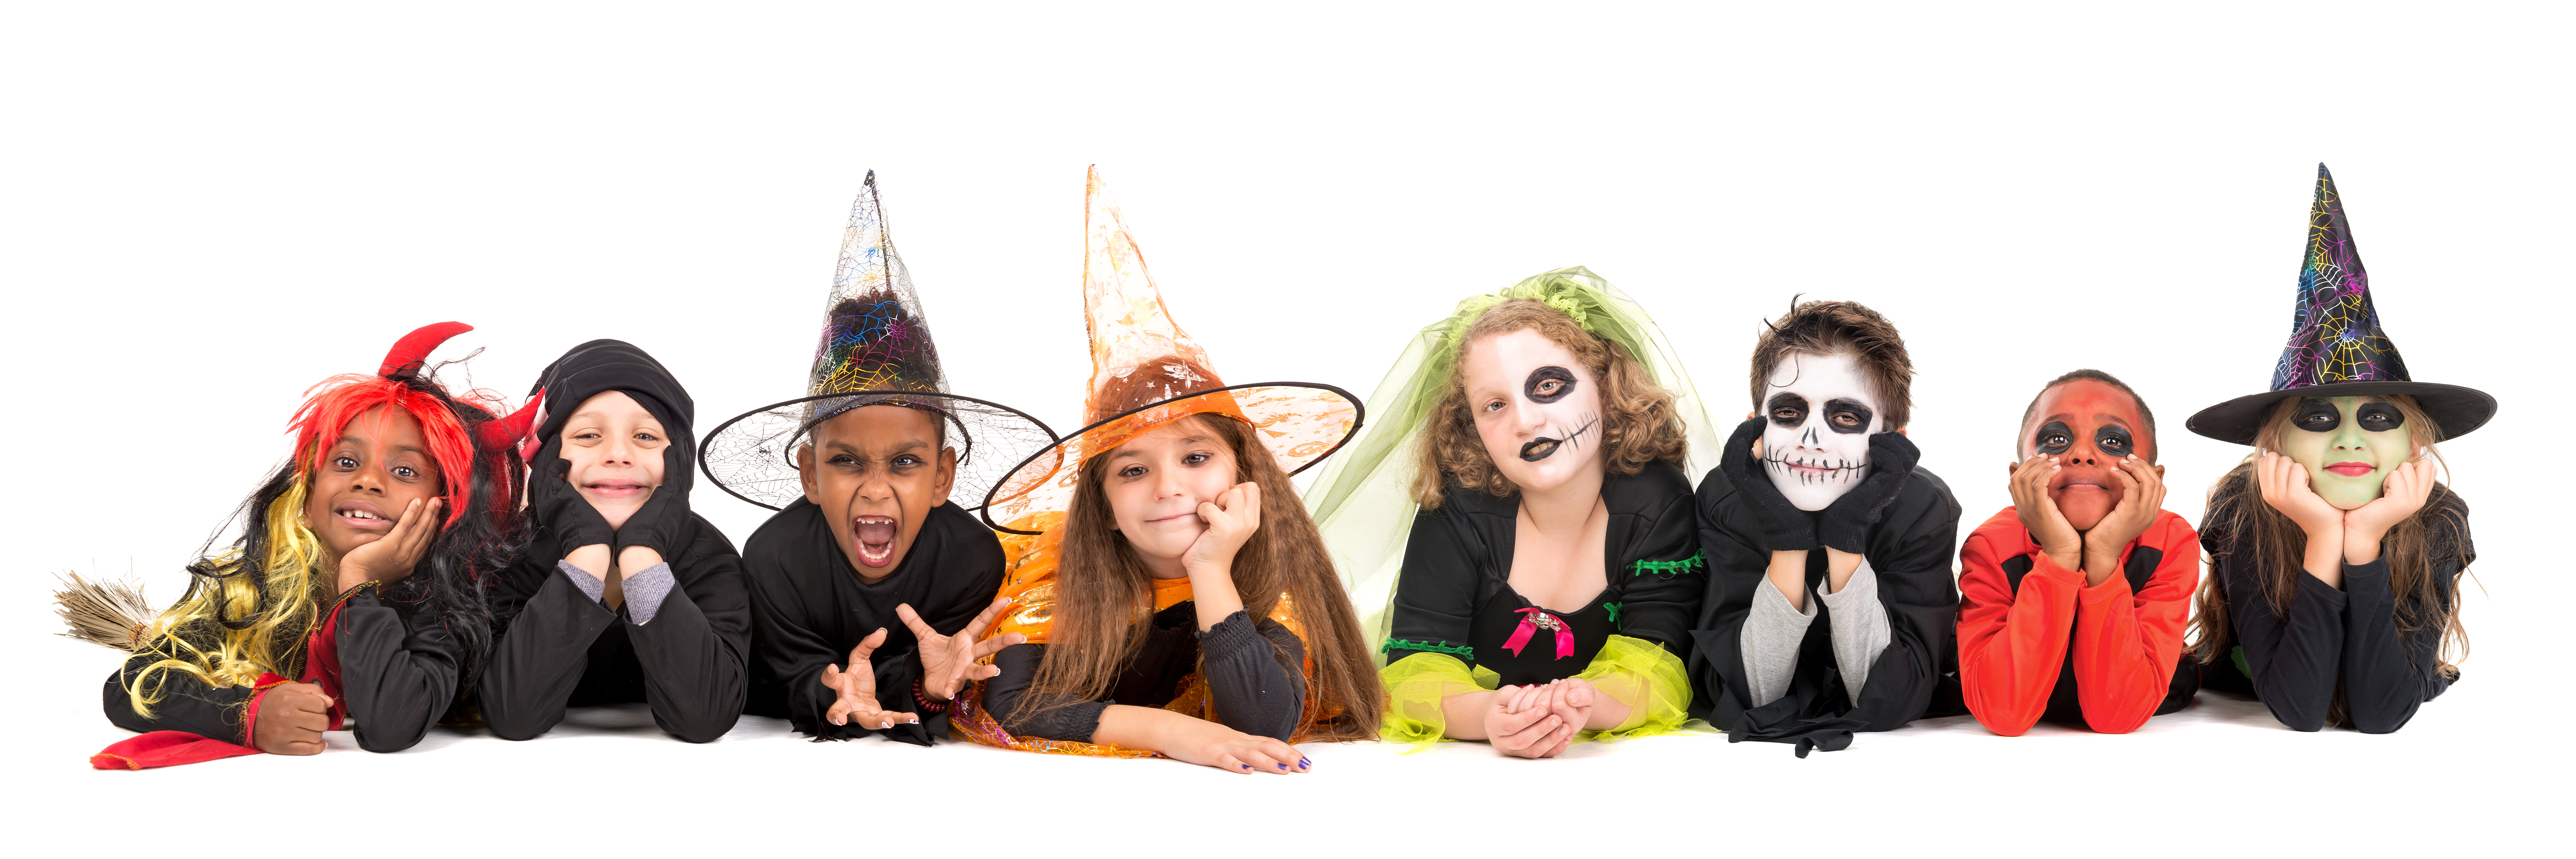 Aggregaat Betekenis Hoeveelheid geld Halloween is een feest voor kinderen! – KiDDoWz: voor kinderen en hun  (groot)ouders